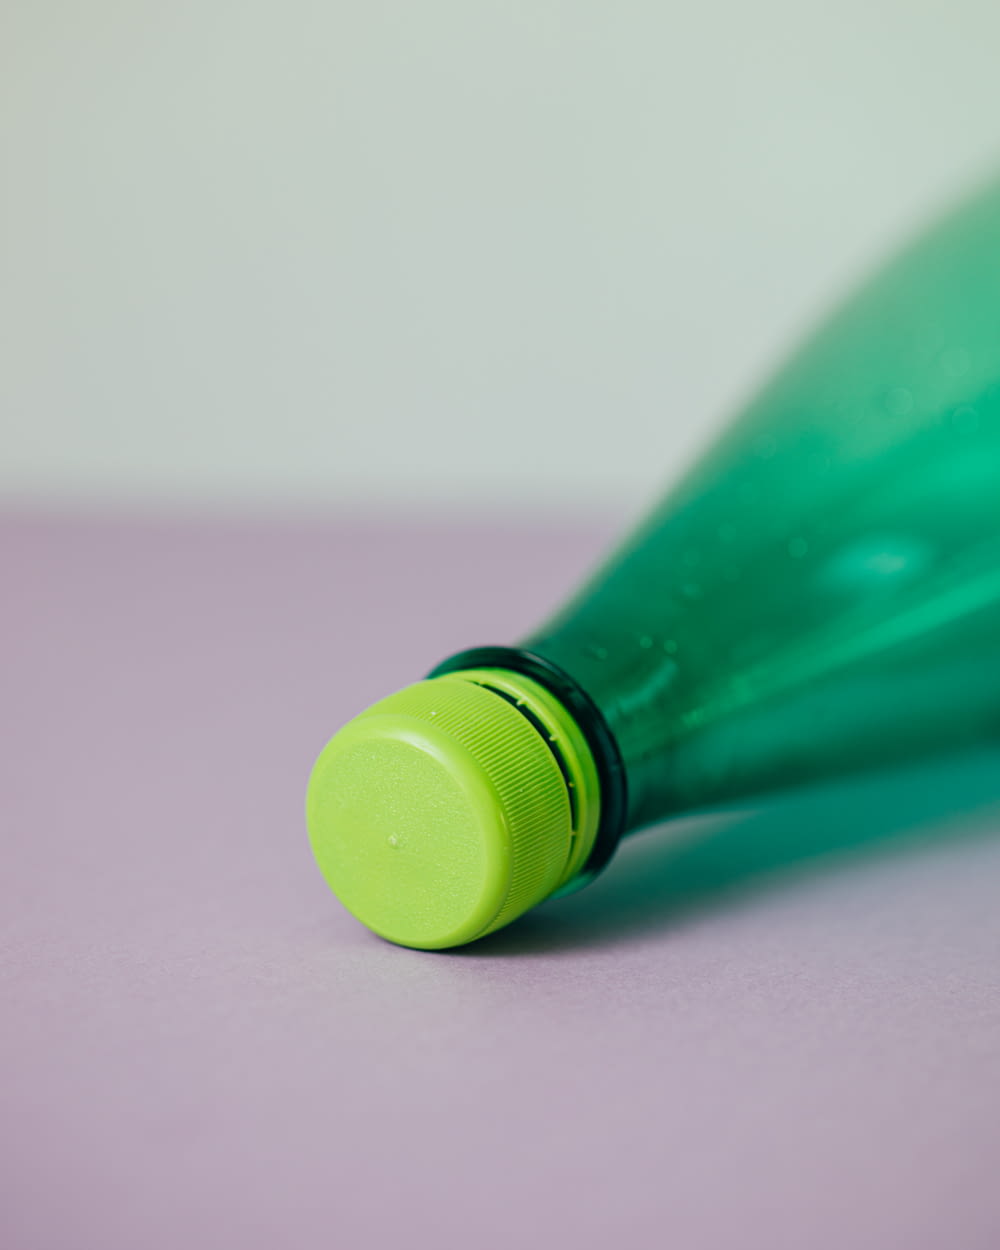 garrafa plástica verde na superfície rosa